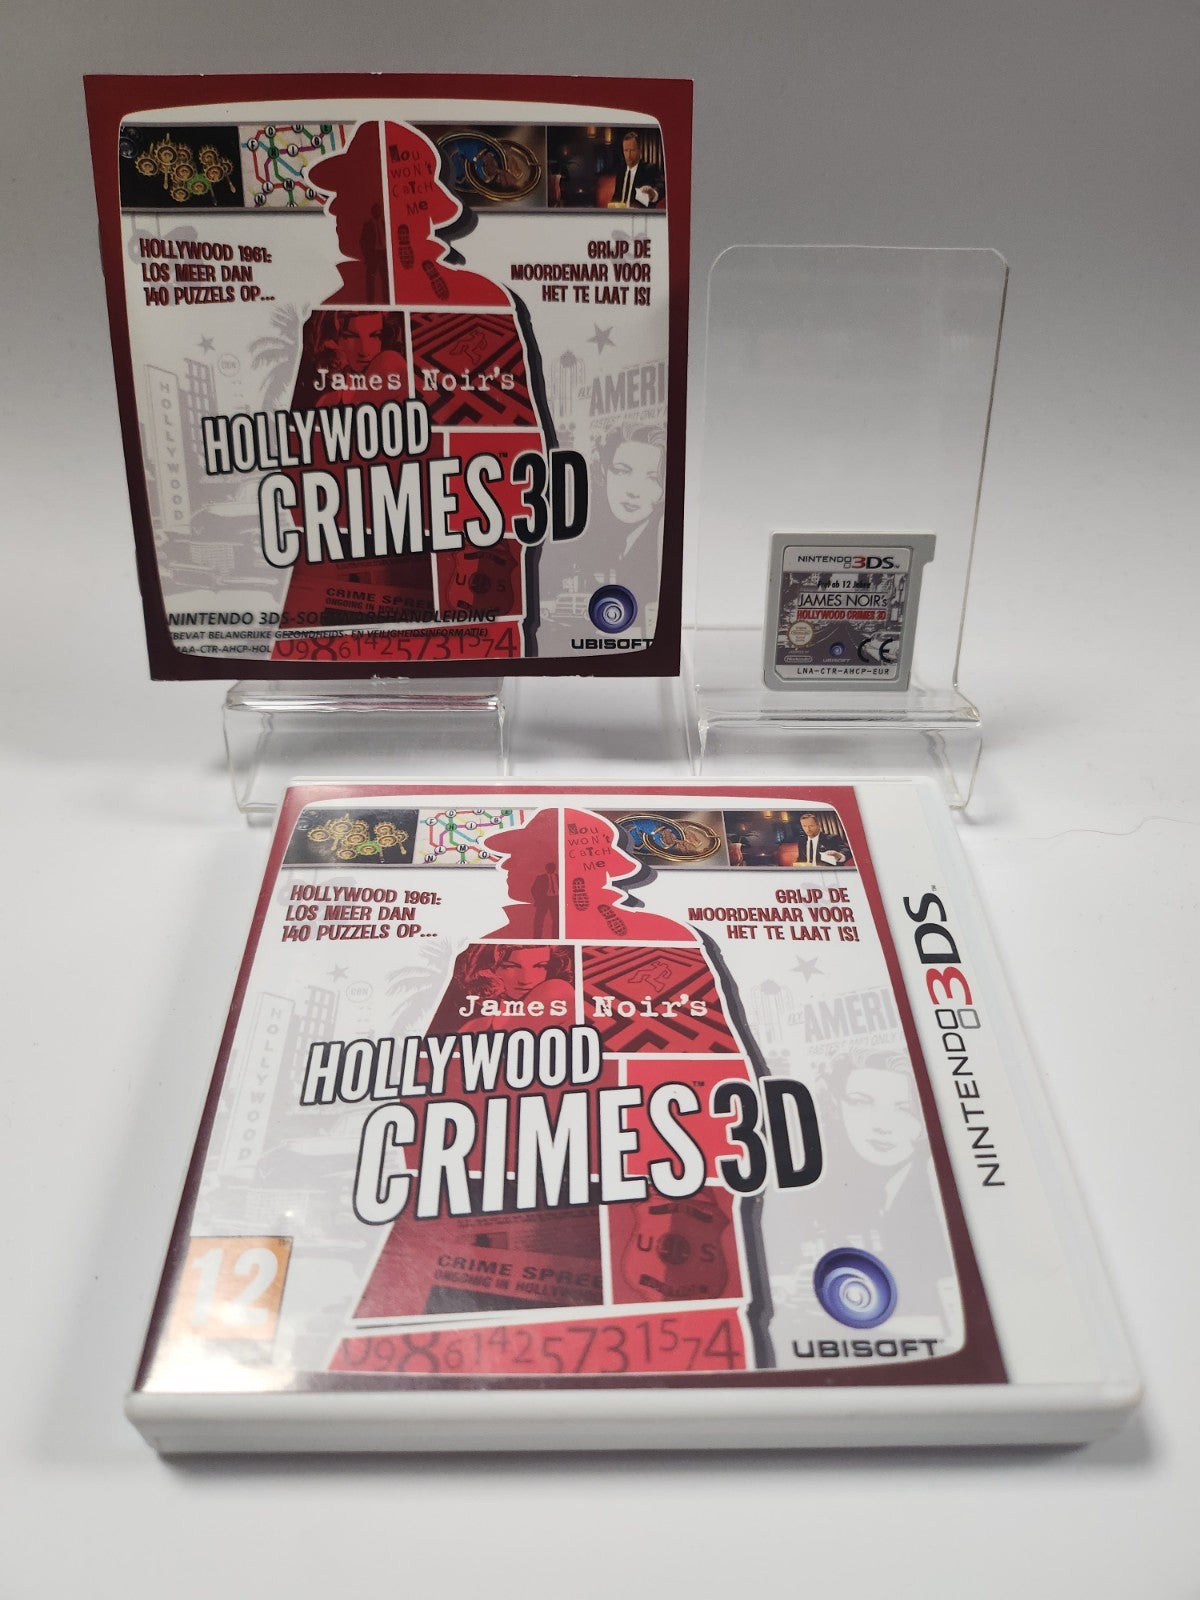 James Noir's Hollywood Crimes 3D Nintendo 3DS